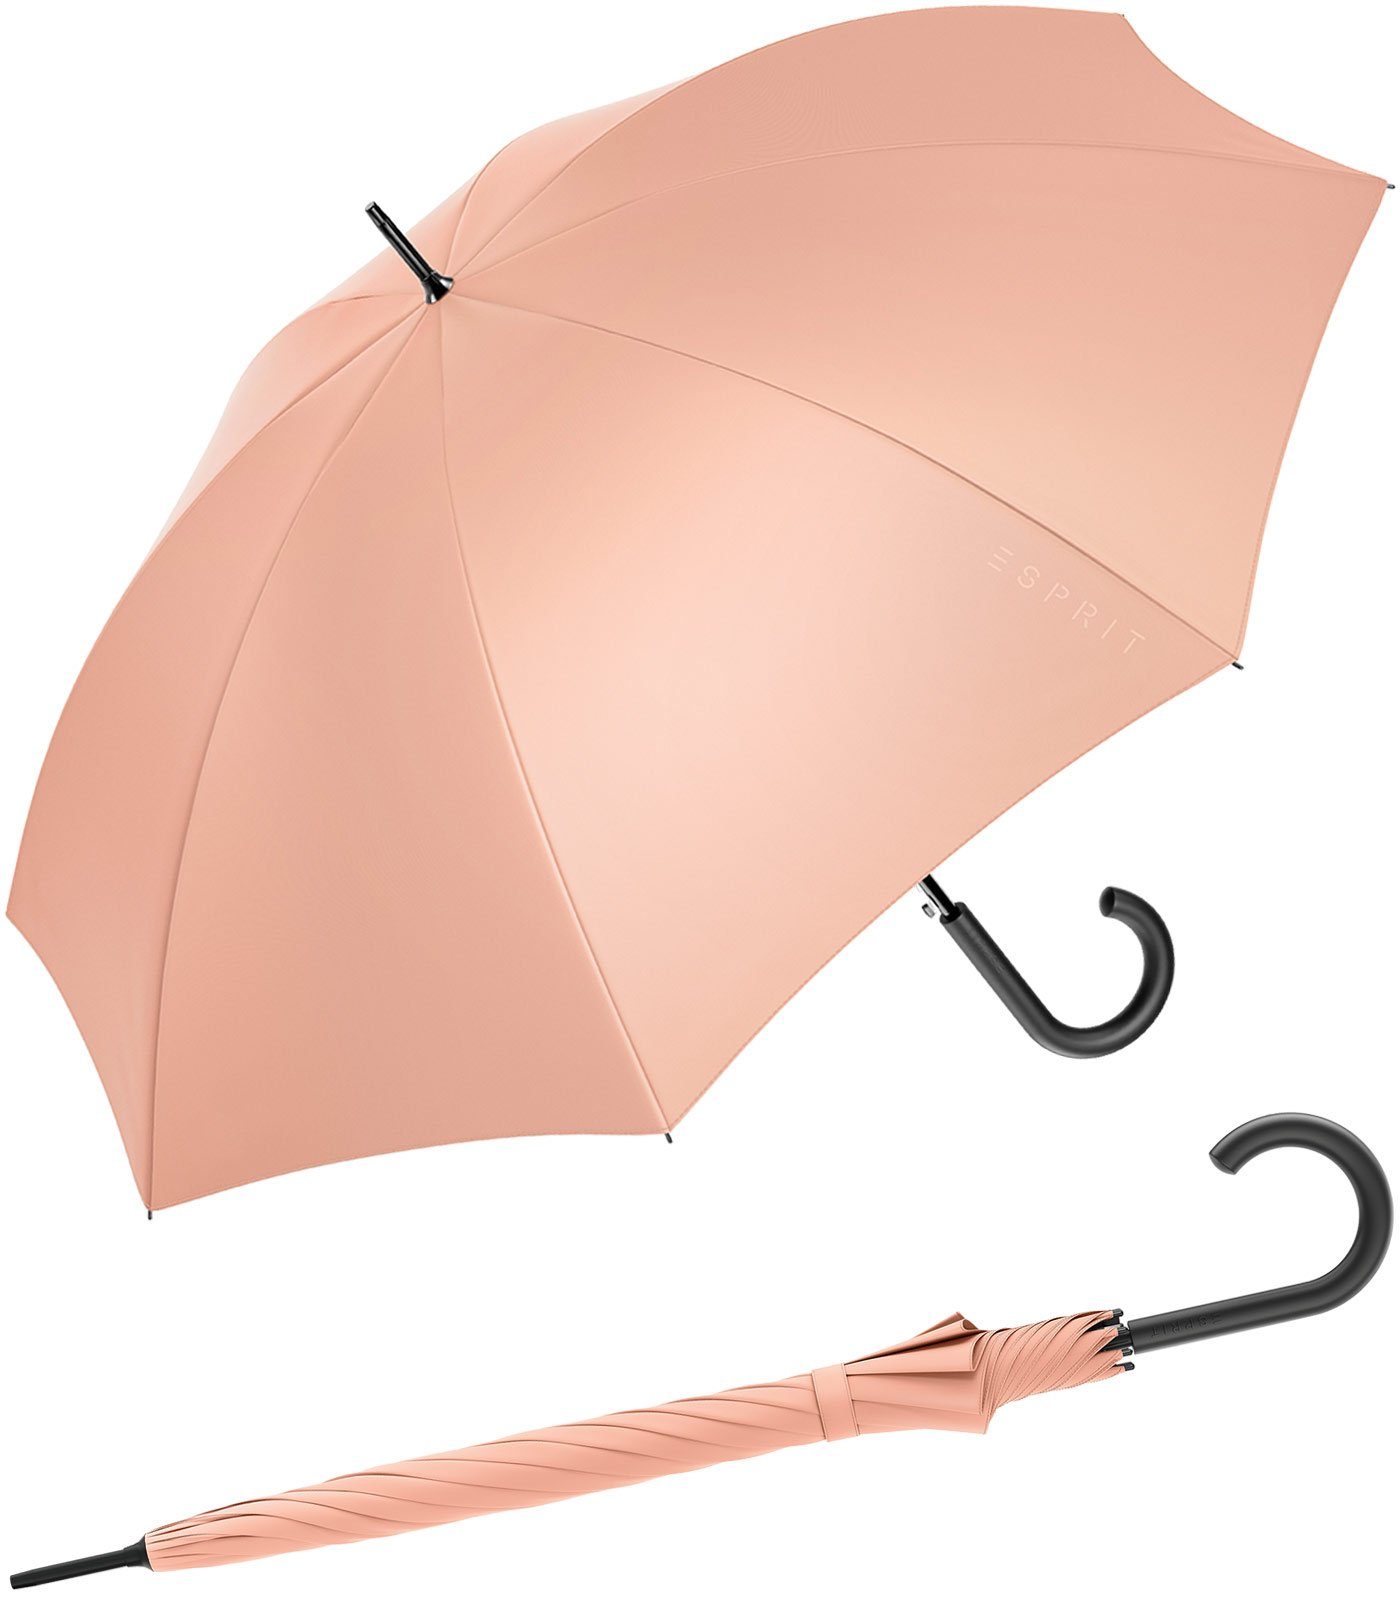 Esprit Stockregenschirm Damen-Regenschirm mit Automatik FJ 2022, groß und stabil, in den Trendfarben pfirsich